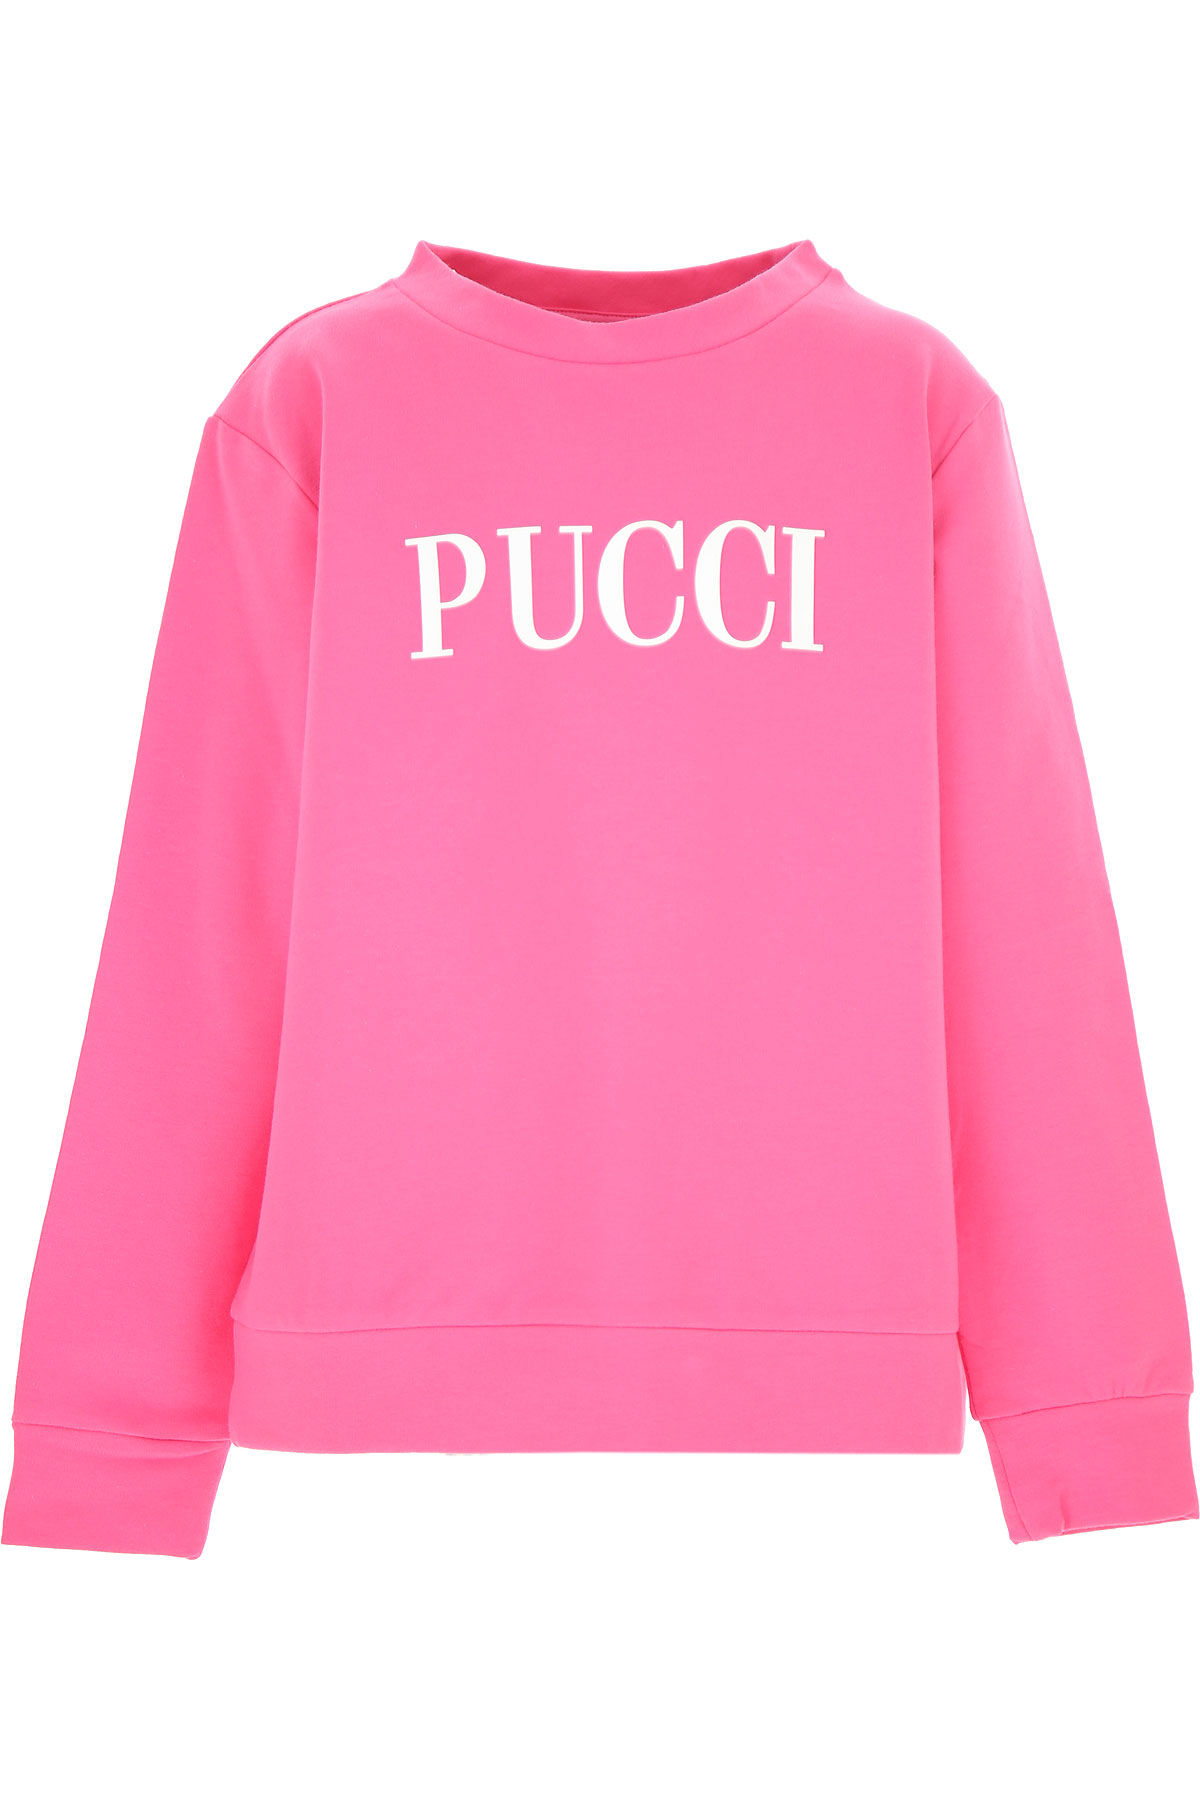 Emilio Pucci Kinder Sweatshirt & Kapuzenpullover für Mädchen Günstig im Sale, Pink, Baumwolle, 2017, 10Y 12Y 14Y 8Y